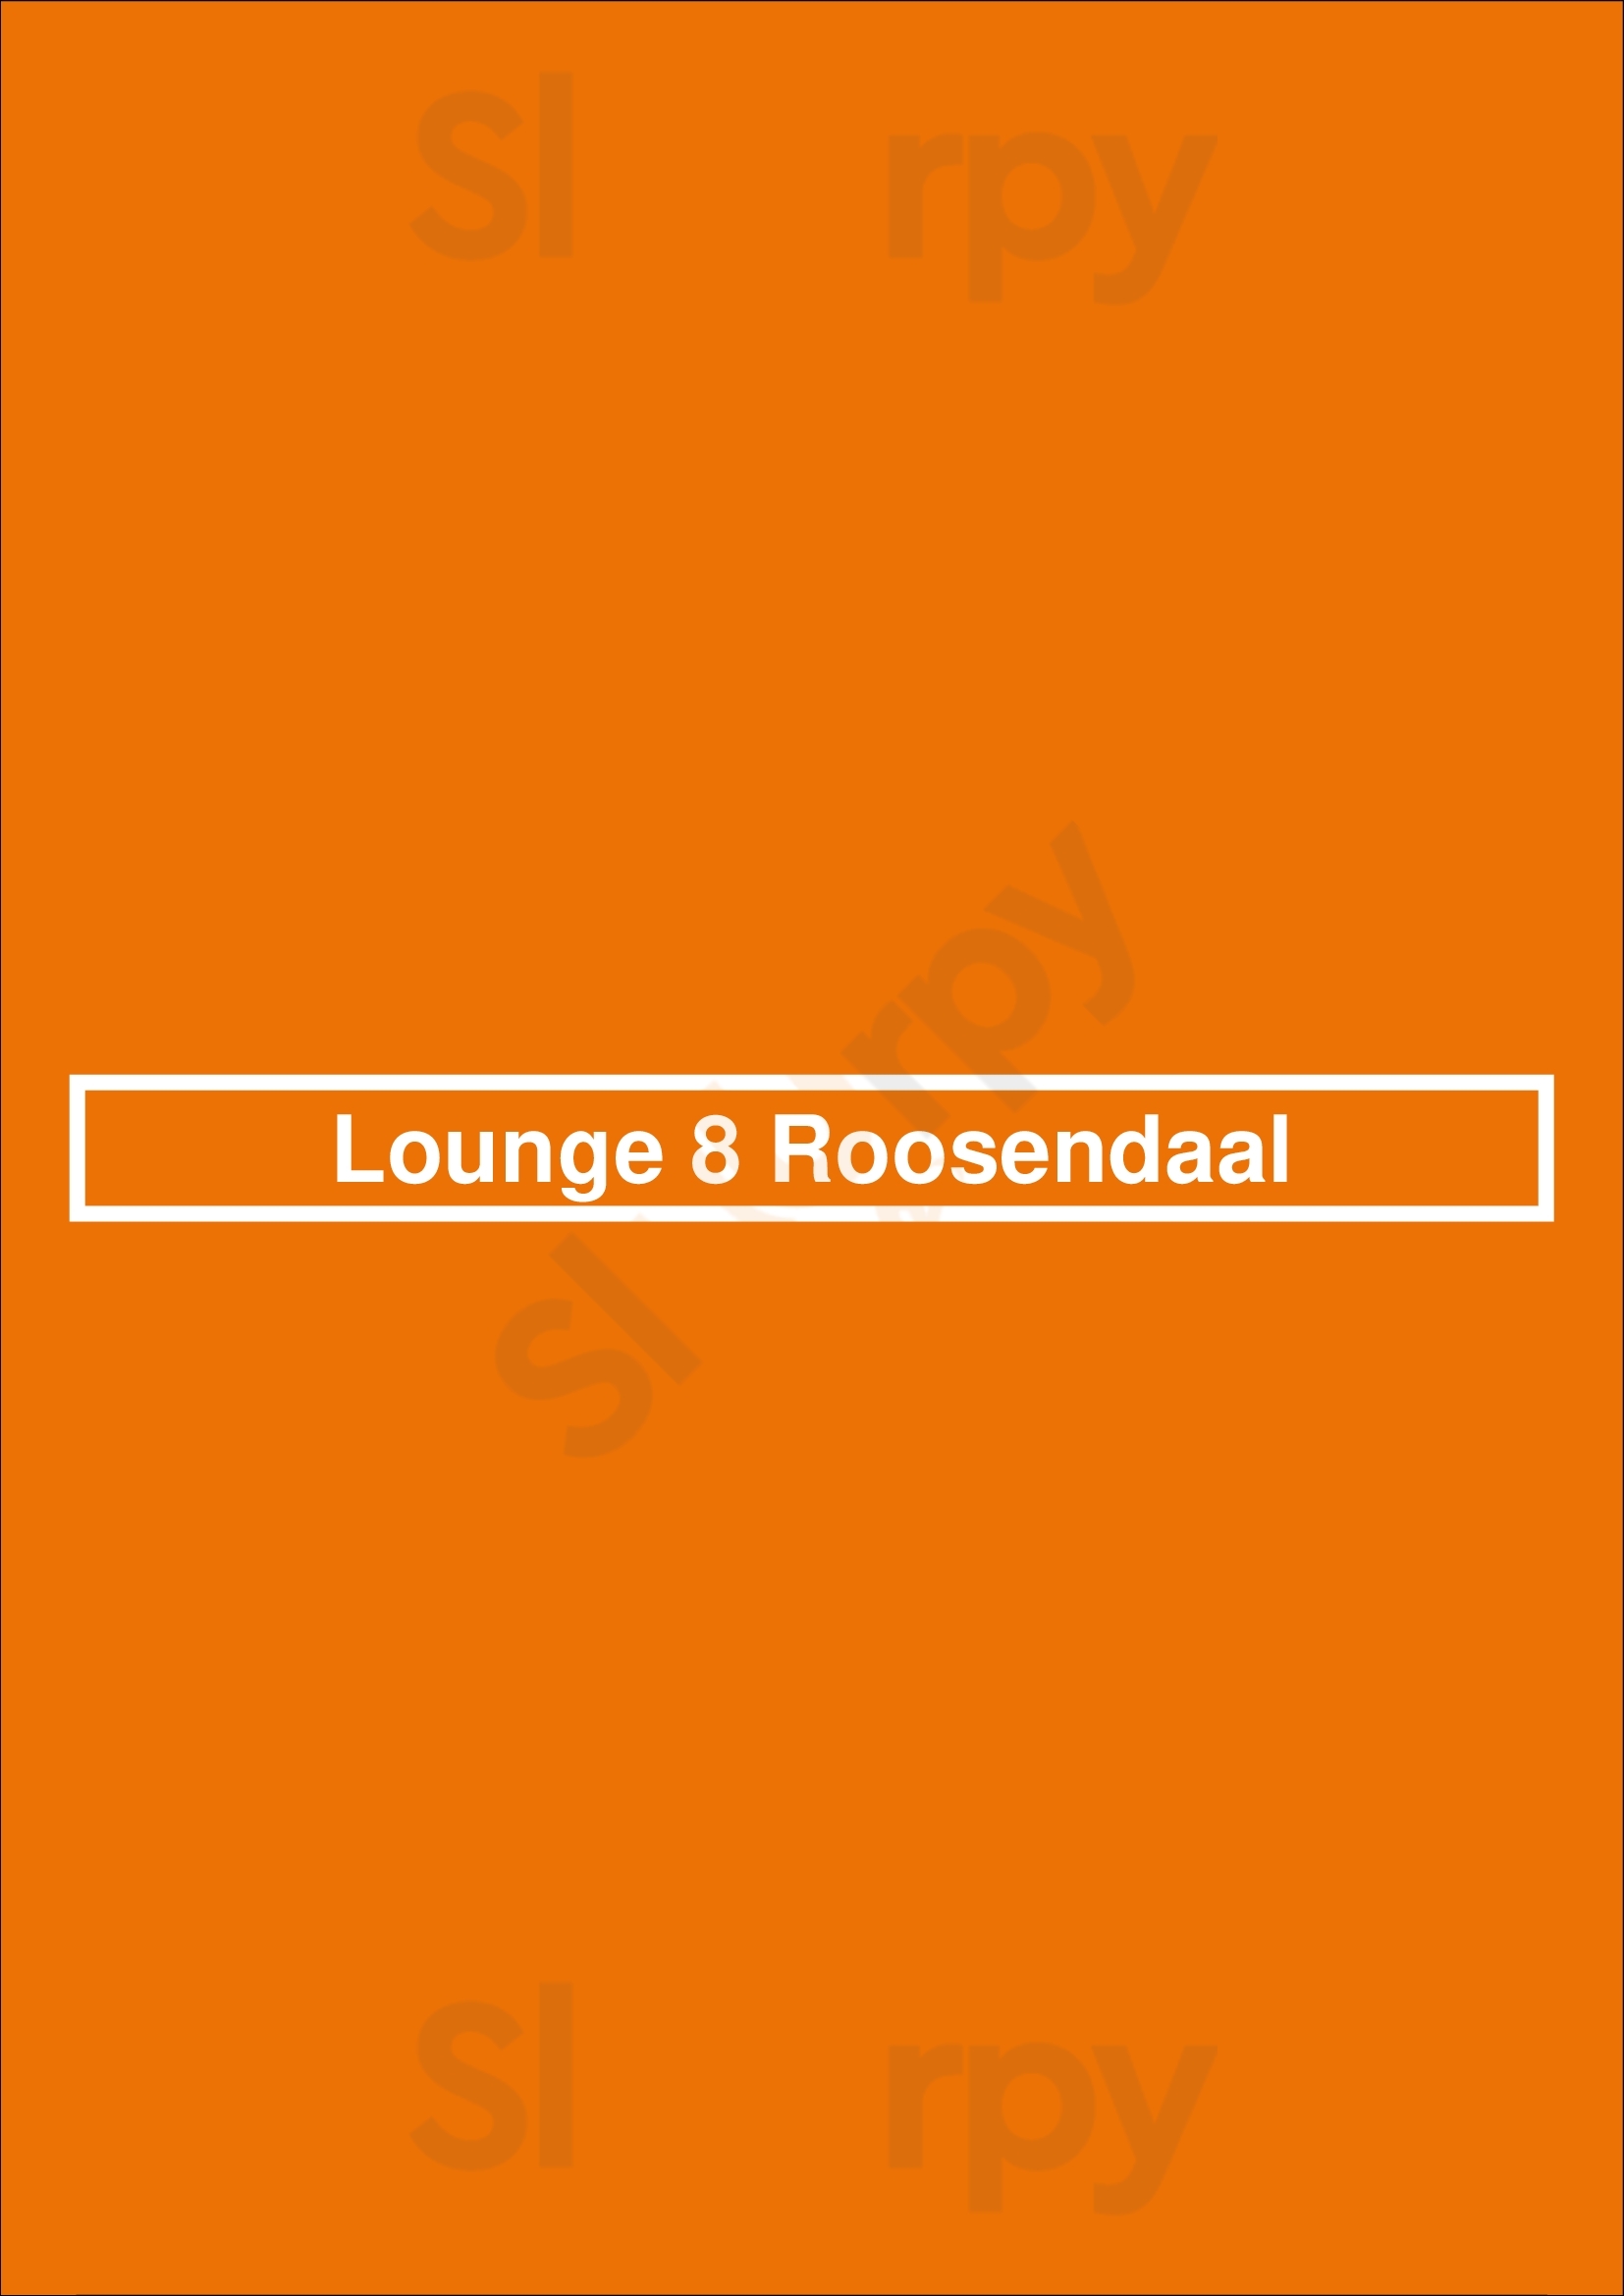 Lounge 8 Roosendaal Roosendaal Menu - 1